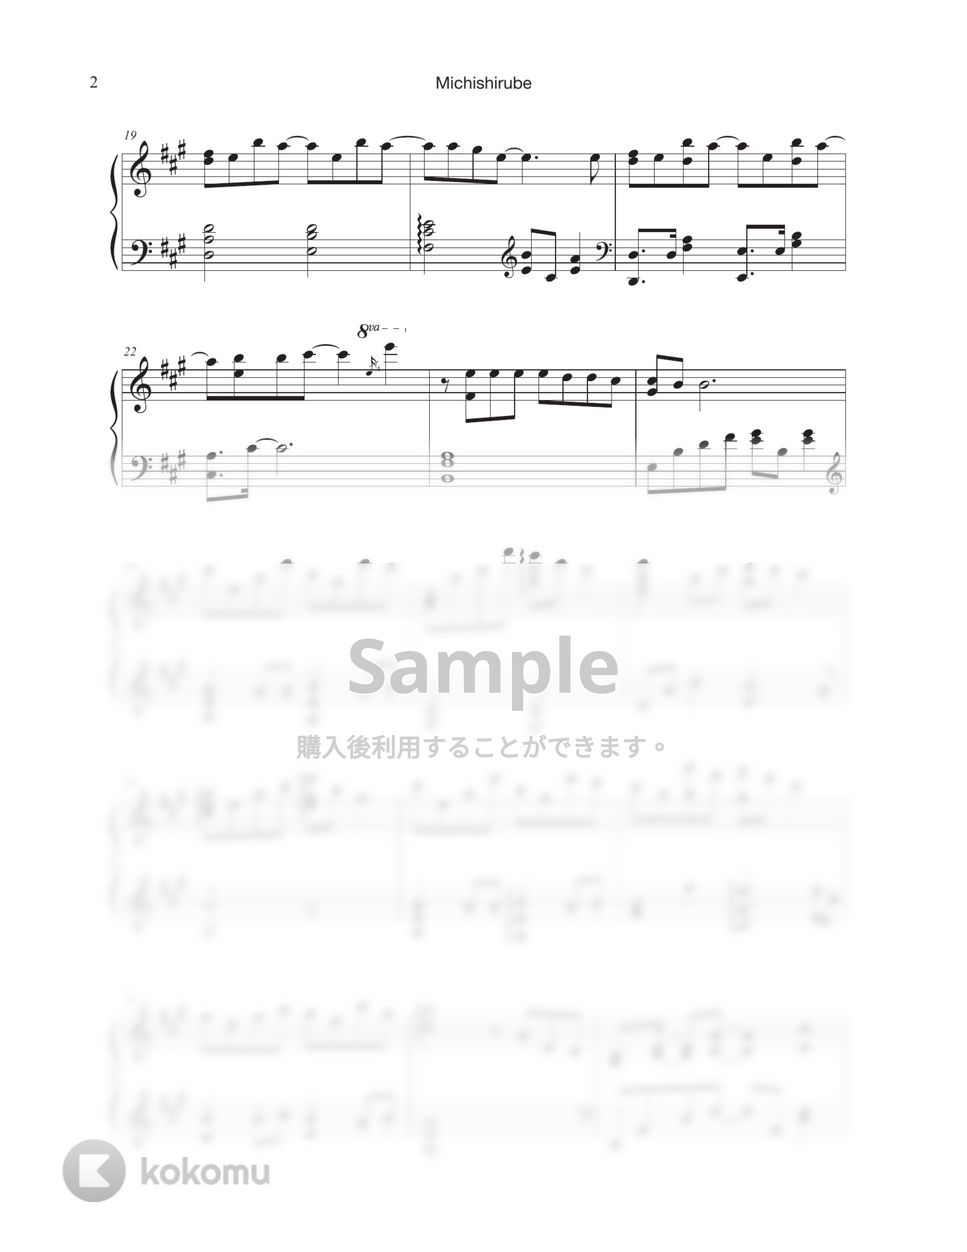 ヴァイオレット・エヴァーガーデン - みちしるべ by Tully Piano